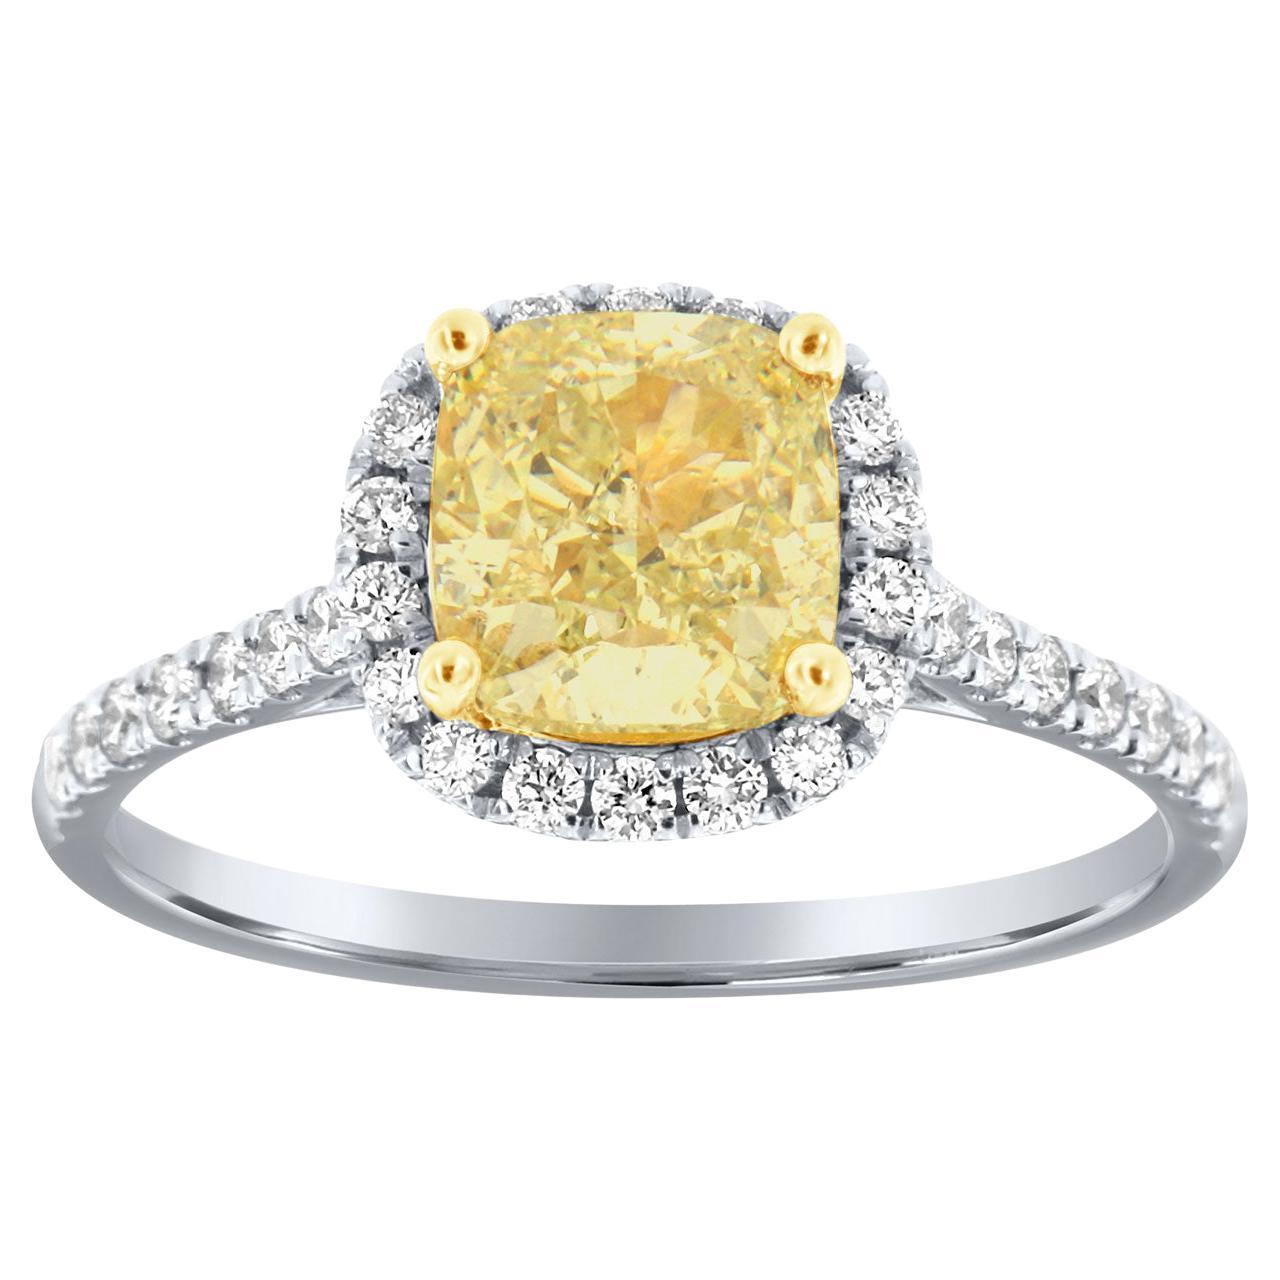 Bague en or 18 carats avec halo de diamants jaunes taille coussin de 1,60 carat